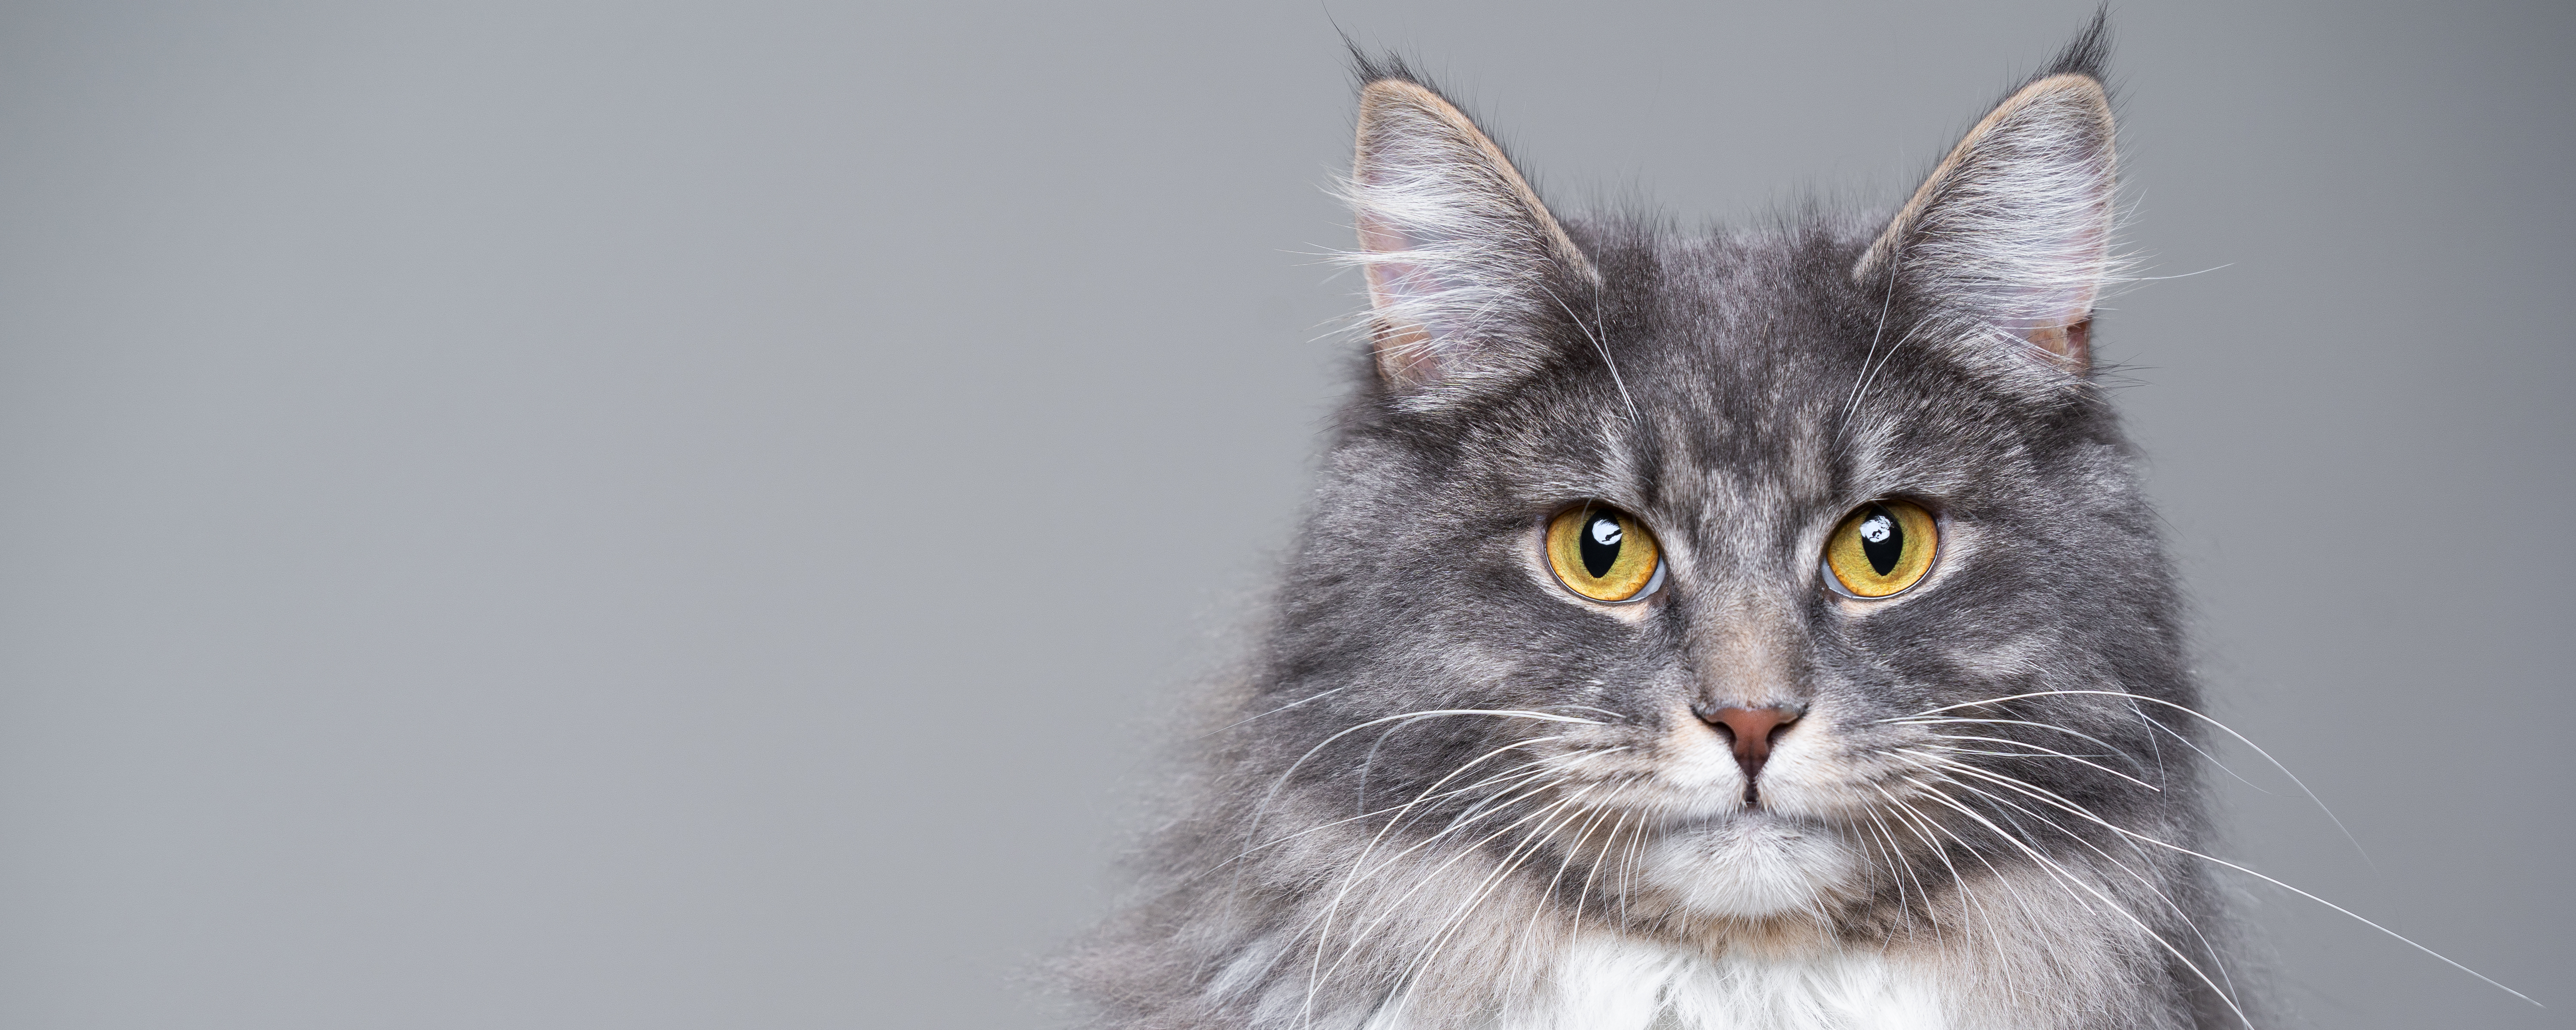 Проблема перхоти у кошек: причины и способы борьбы